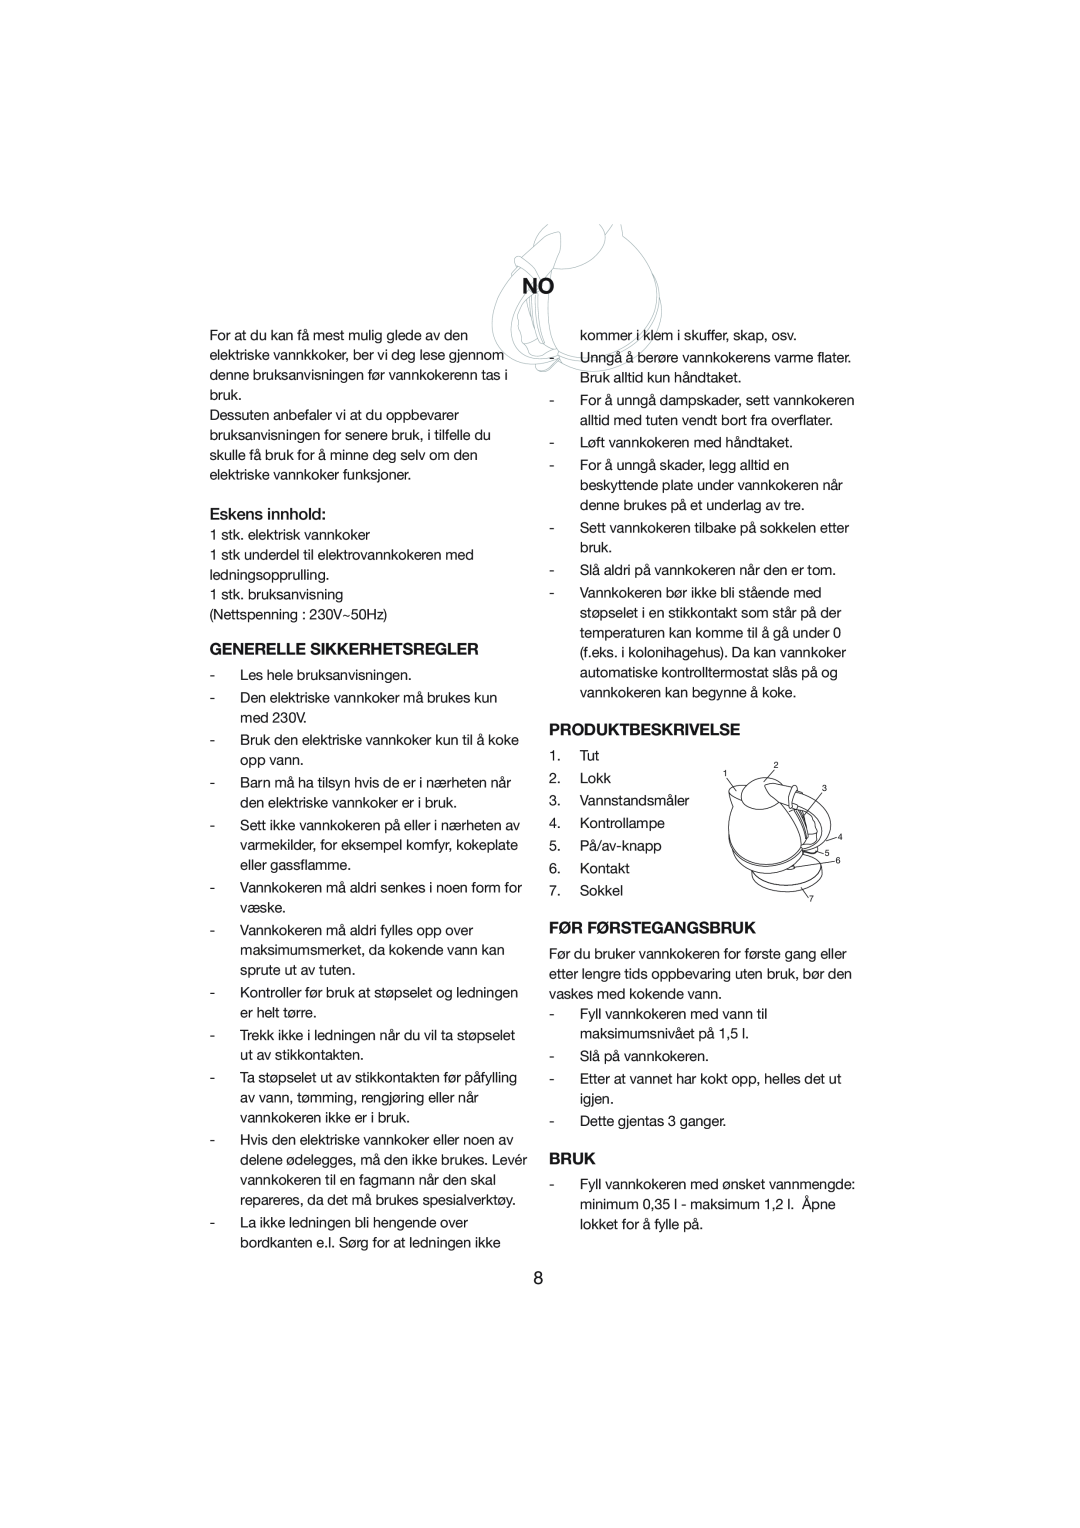 Melissa 245-015 manual Eskens innhold, Generelle Sikkerhetsregler, Produktbeskrivelse, Før Førstegangsbruk 